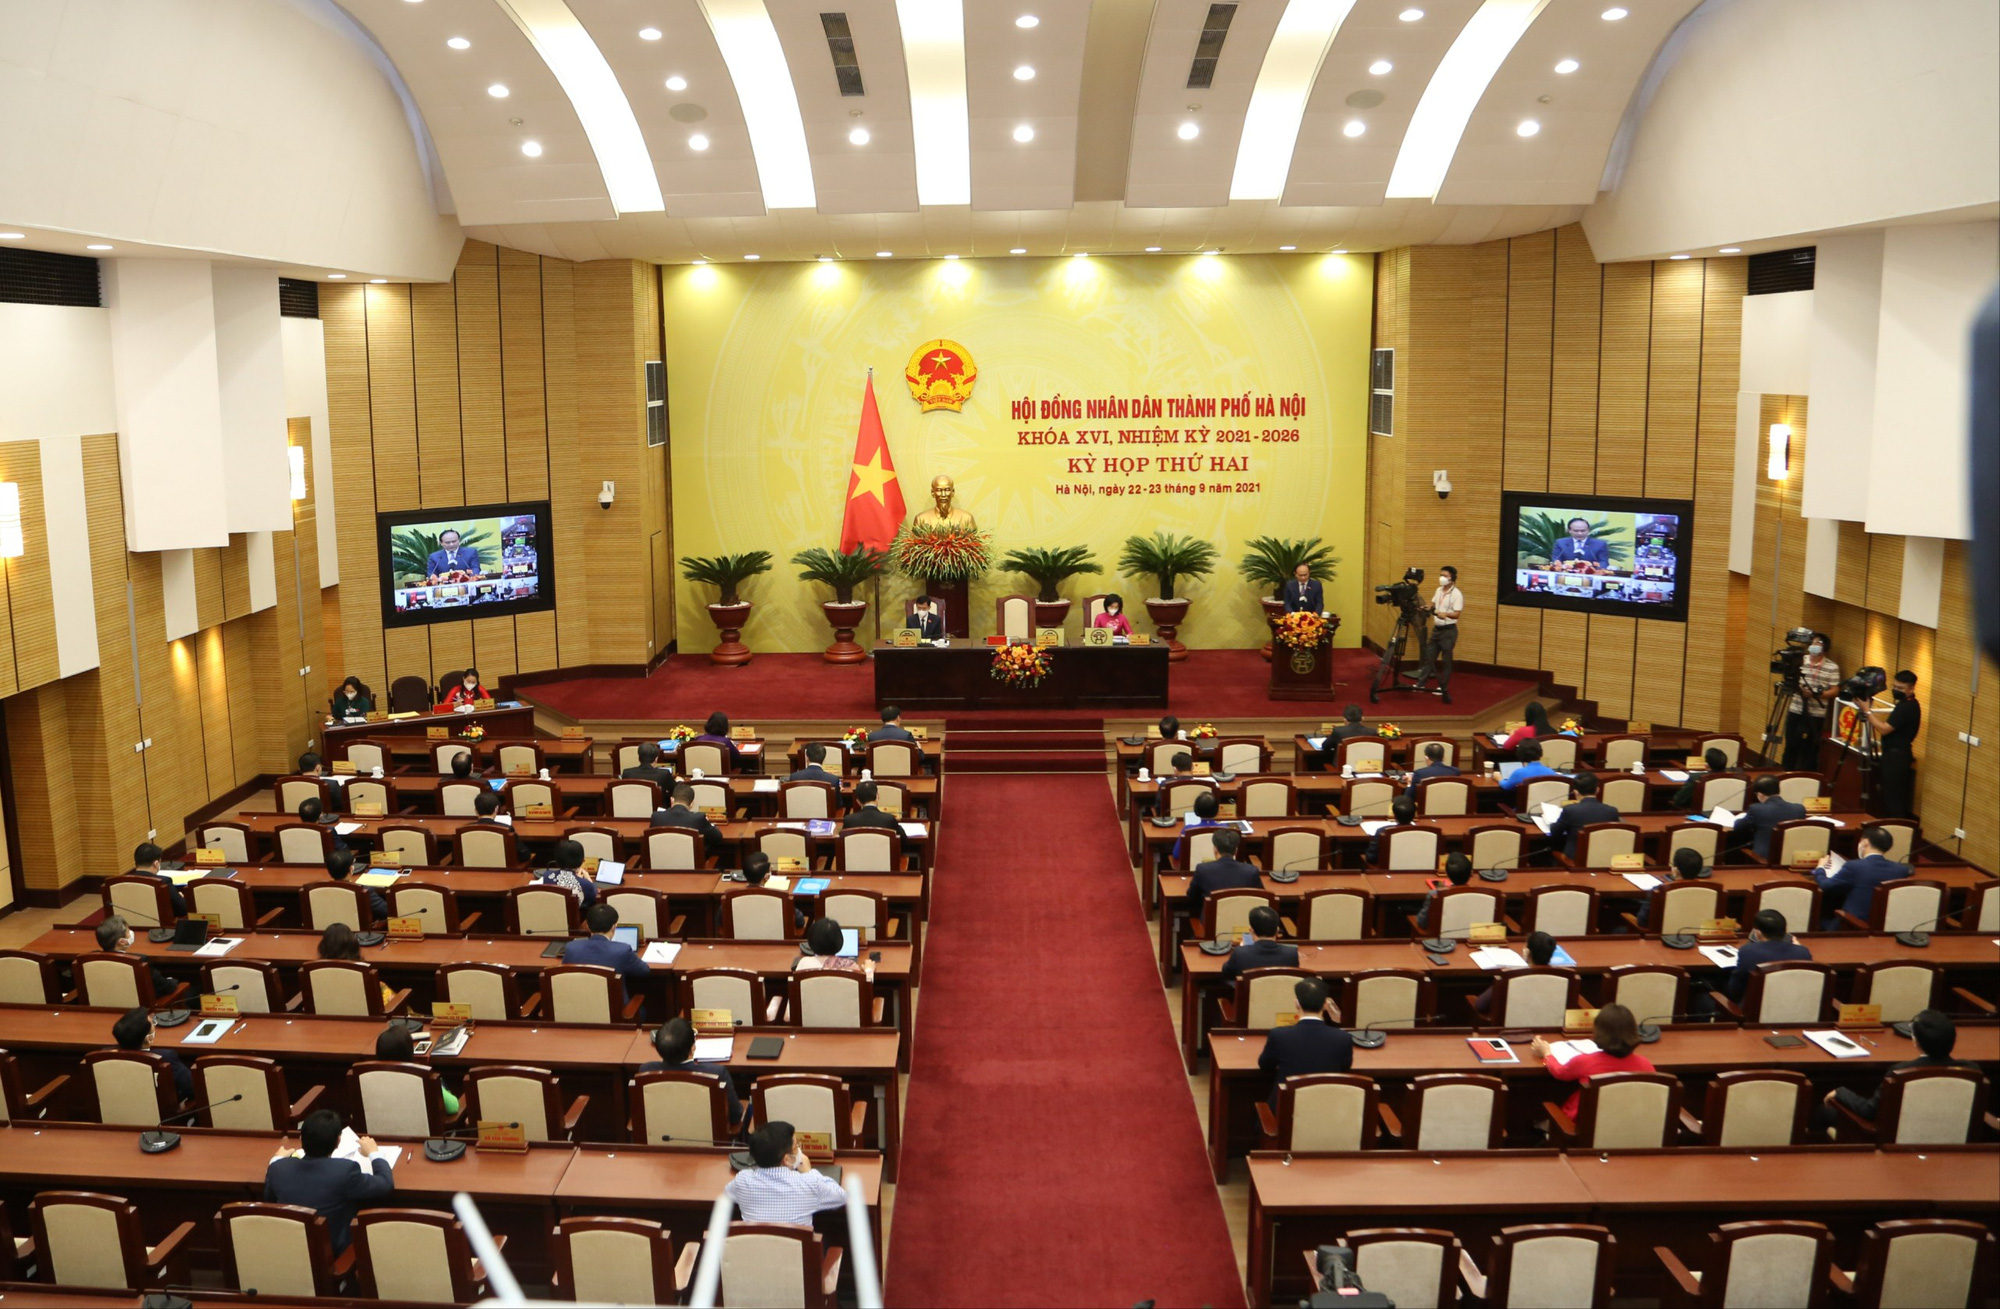 Thí điểm chính quyền đô thị Hà Nội: 21 lãnh đạo phường phải nghỉ việc sẽ được hưởng 3 tháng lương - Ảnh 2.